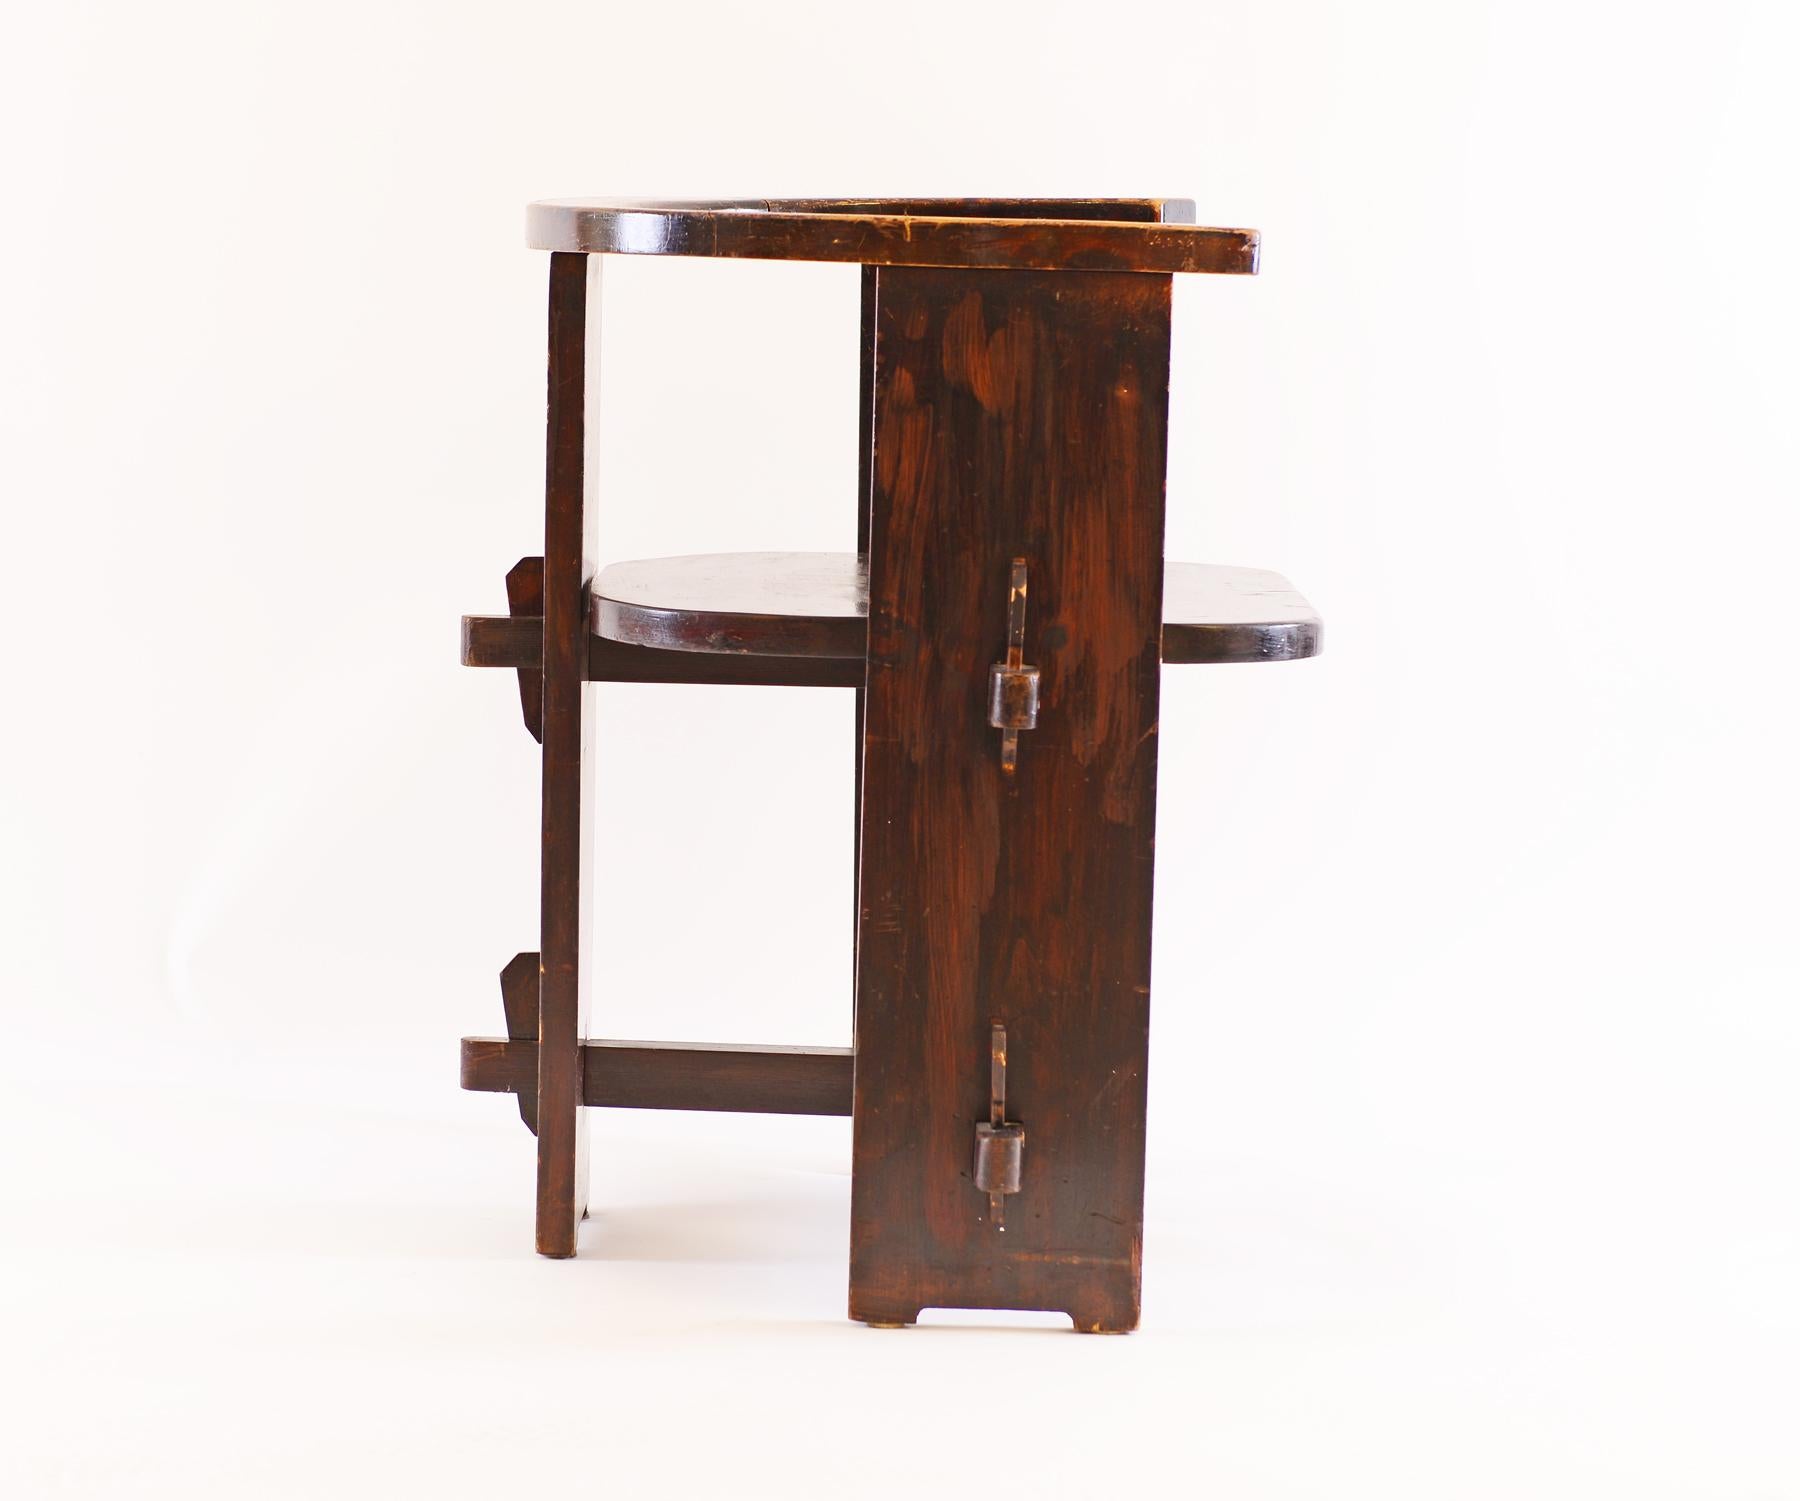 Sehr seltener Stuhl aus dem frühen 20. Jahrhundert, Schule Josef Hoffmann, stark beeinflusst von der Arts and Crafts Bewegung, Buchenholz gebeizt und lackiert - Original.
 